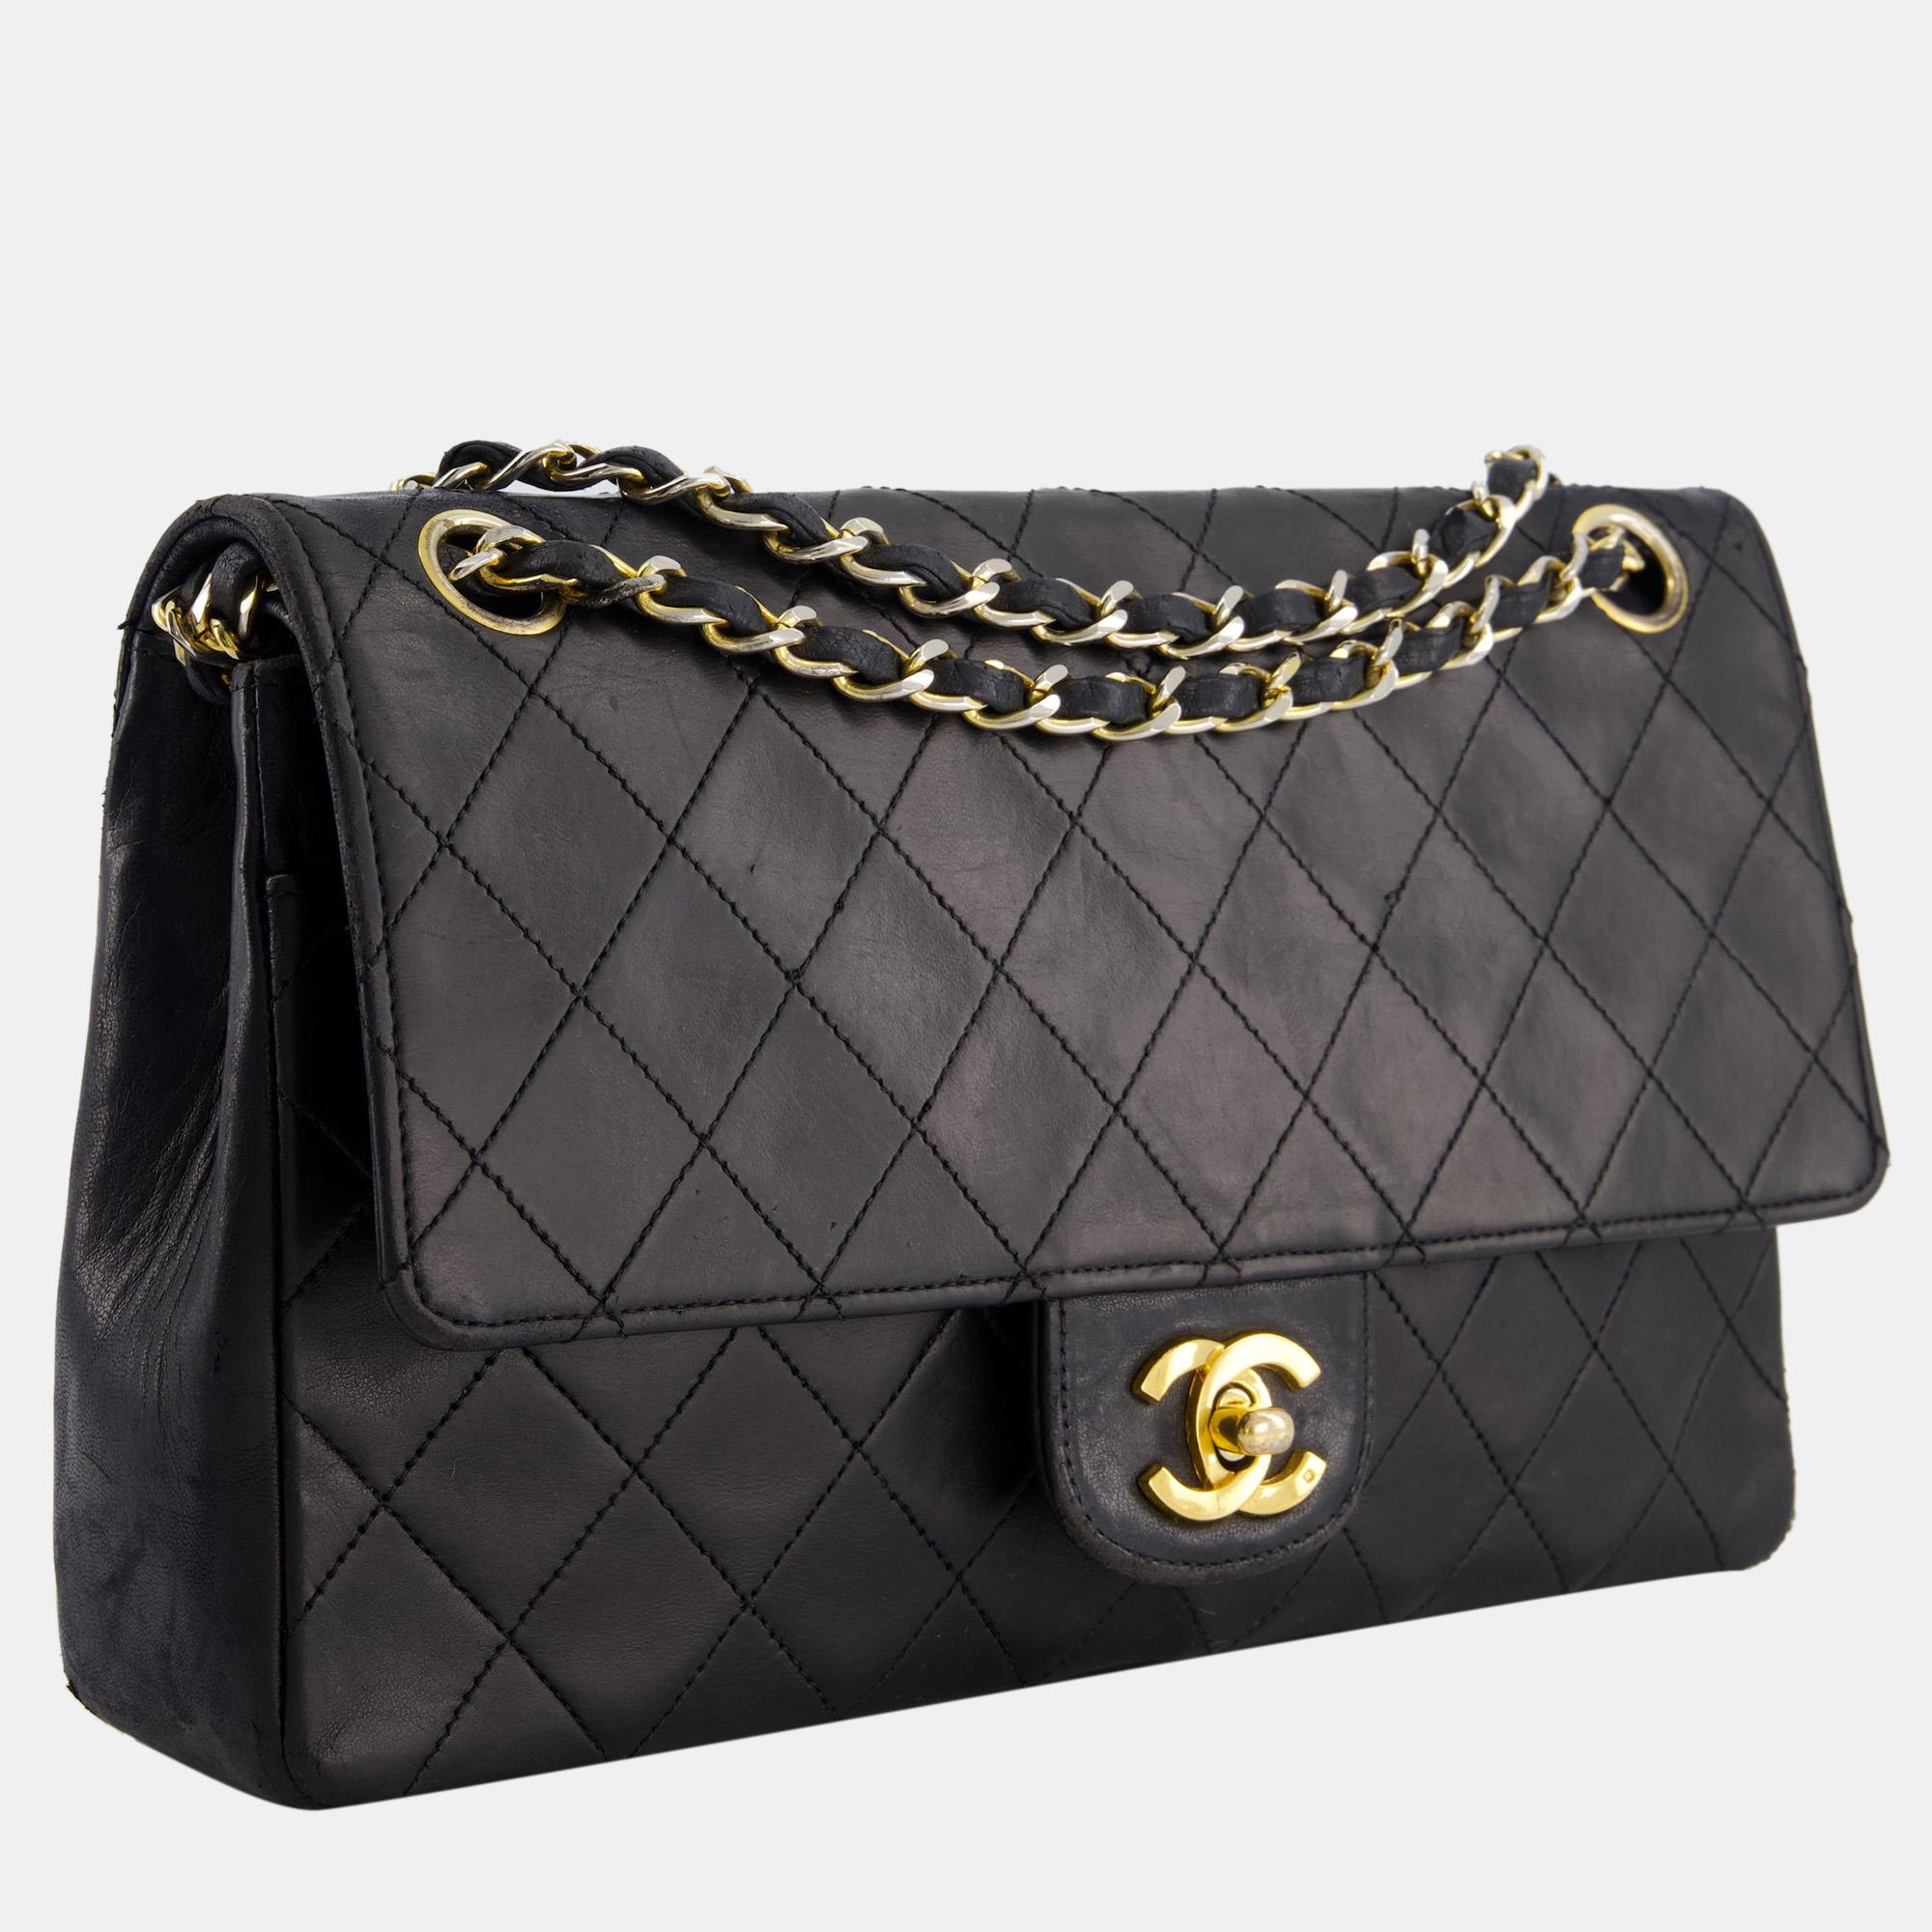 Élevez votre style avec ce sac Chanel. Alliant forme et fonction, cet accessoire exquis incarne la sophistication, vous assurant de vous démarquer avec élégance et praticité à vos côtés.

Comprend : Sac à poussière et certificat d'Entrupy

